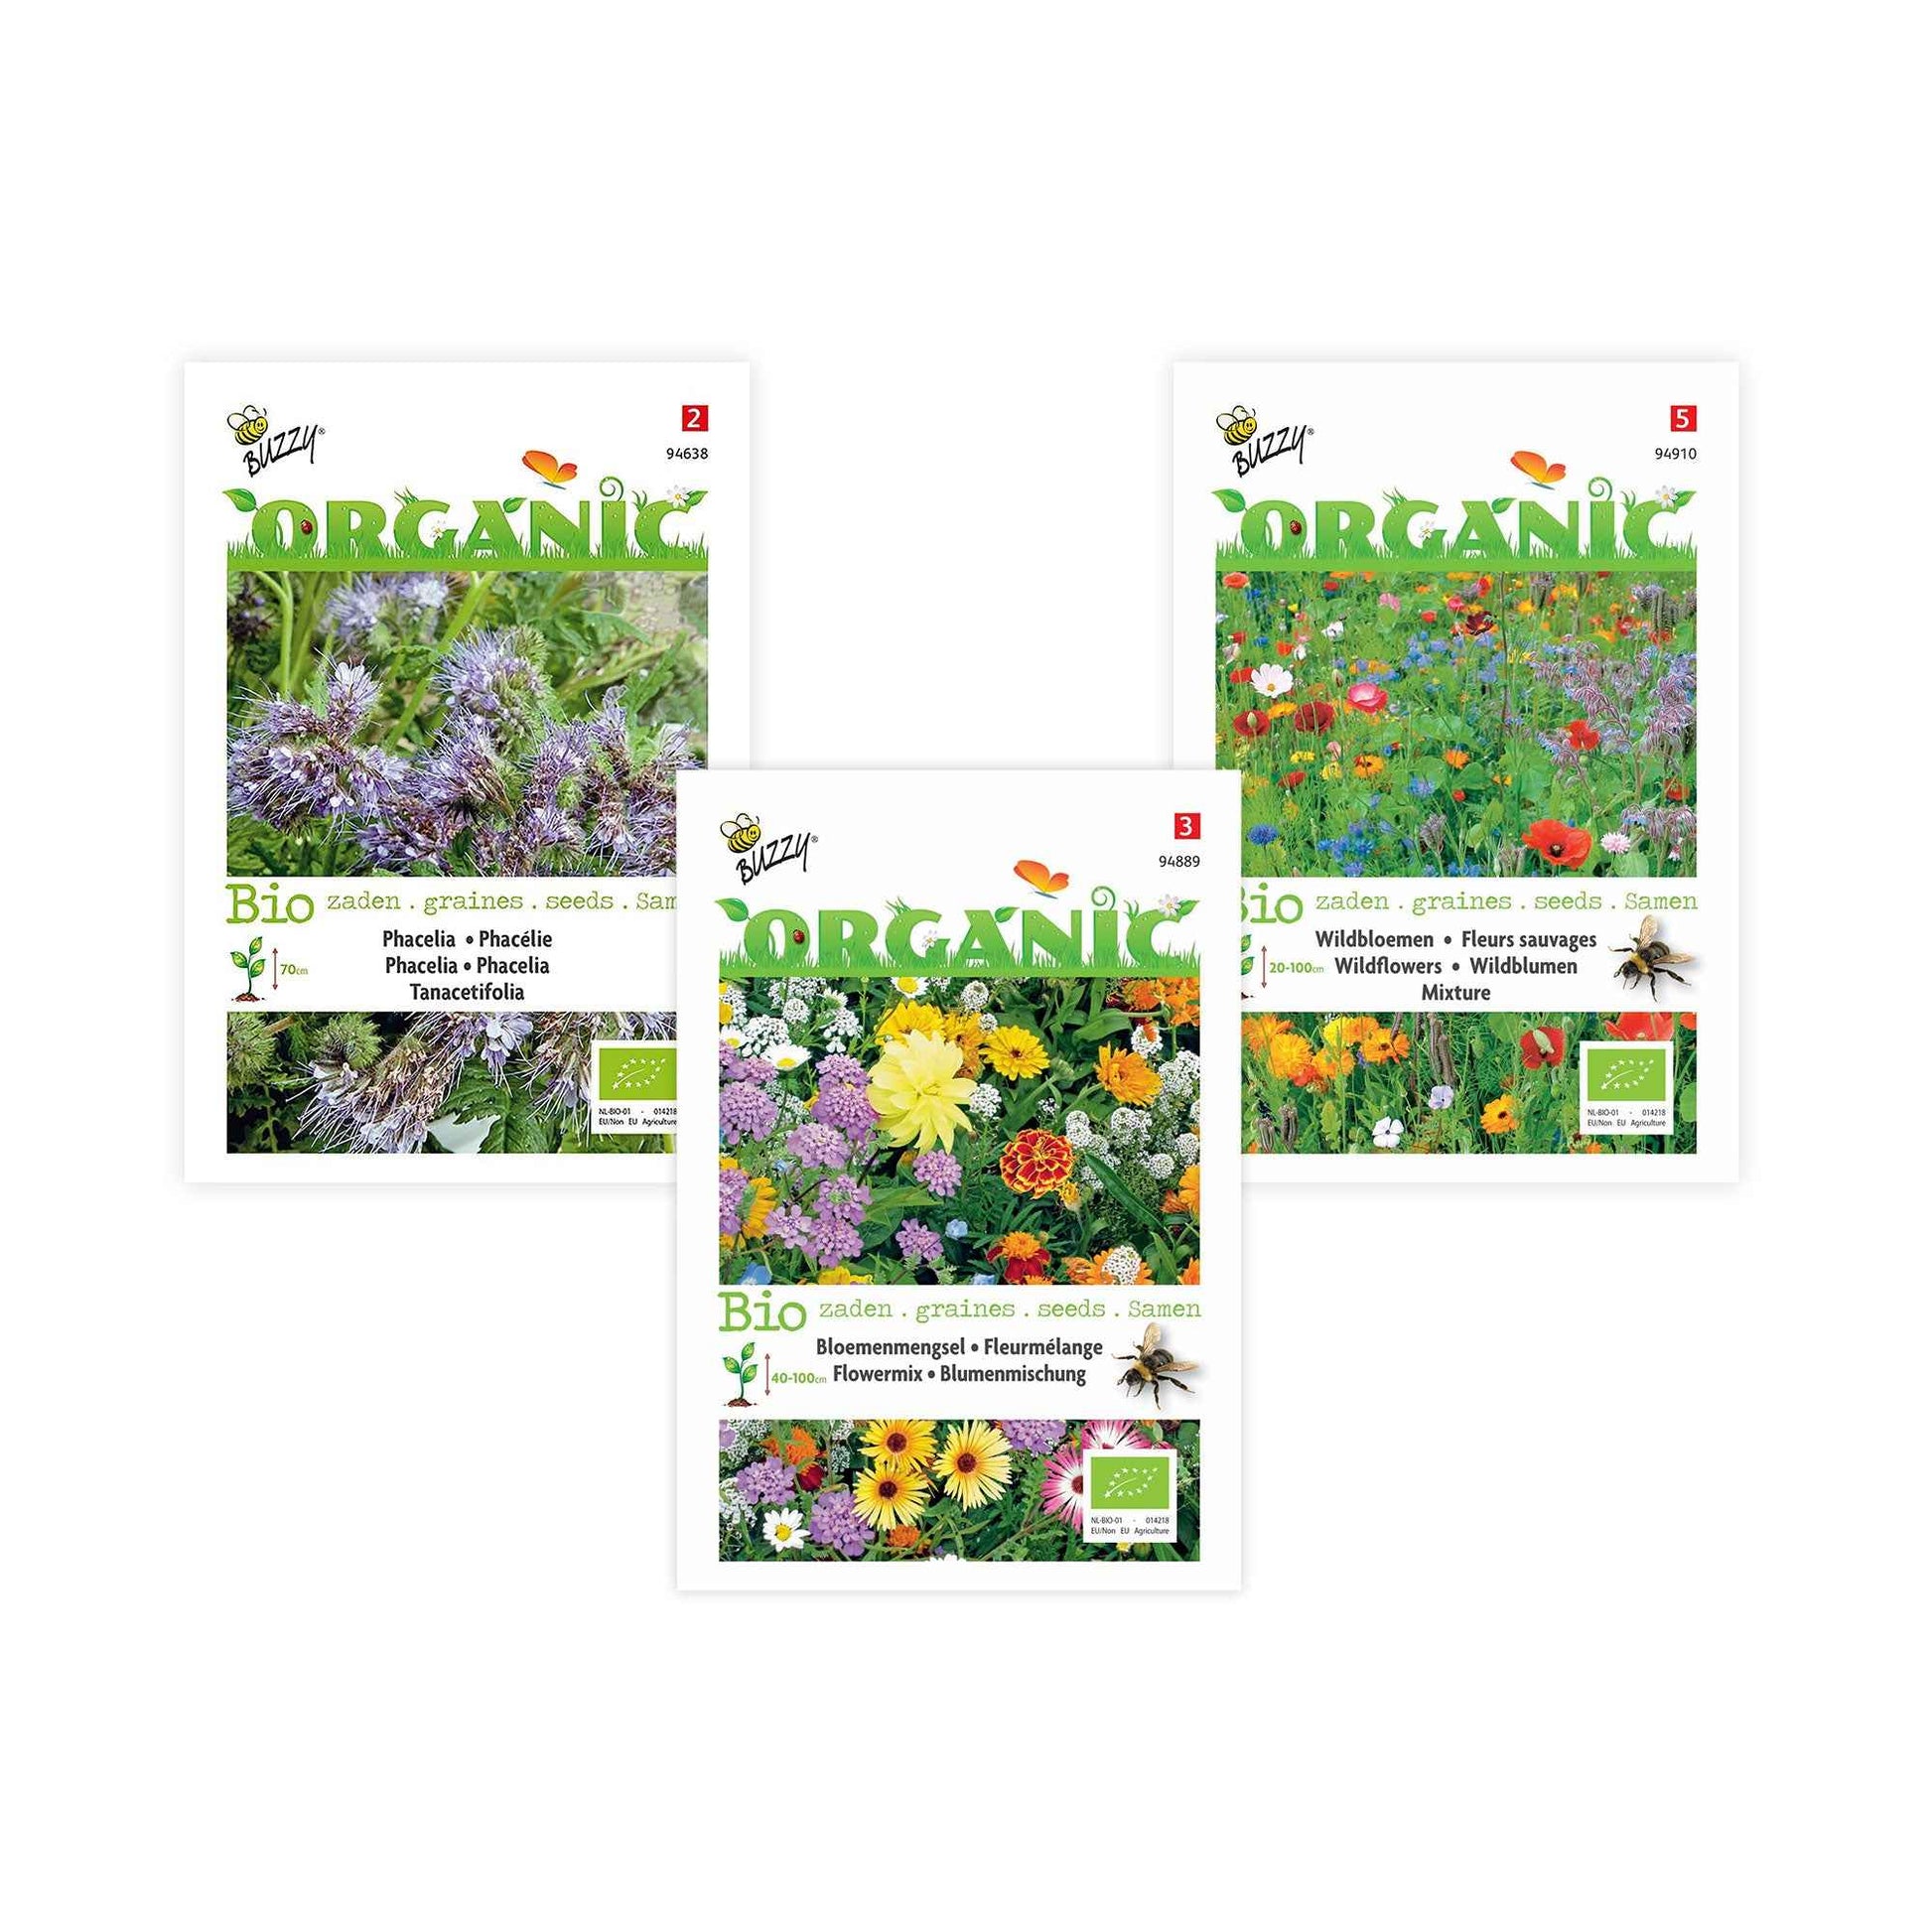 Bijenlokkend bloemenpakket Blije Bij - Biologisch - Bloemzaden - Biologisch geteeld